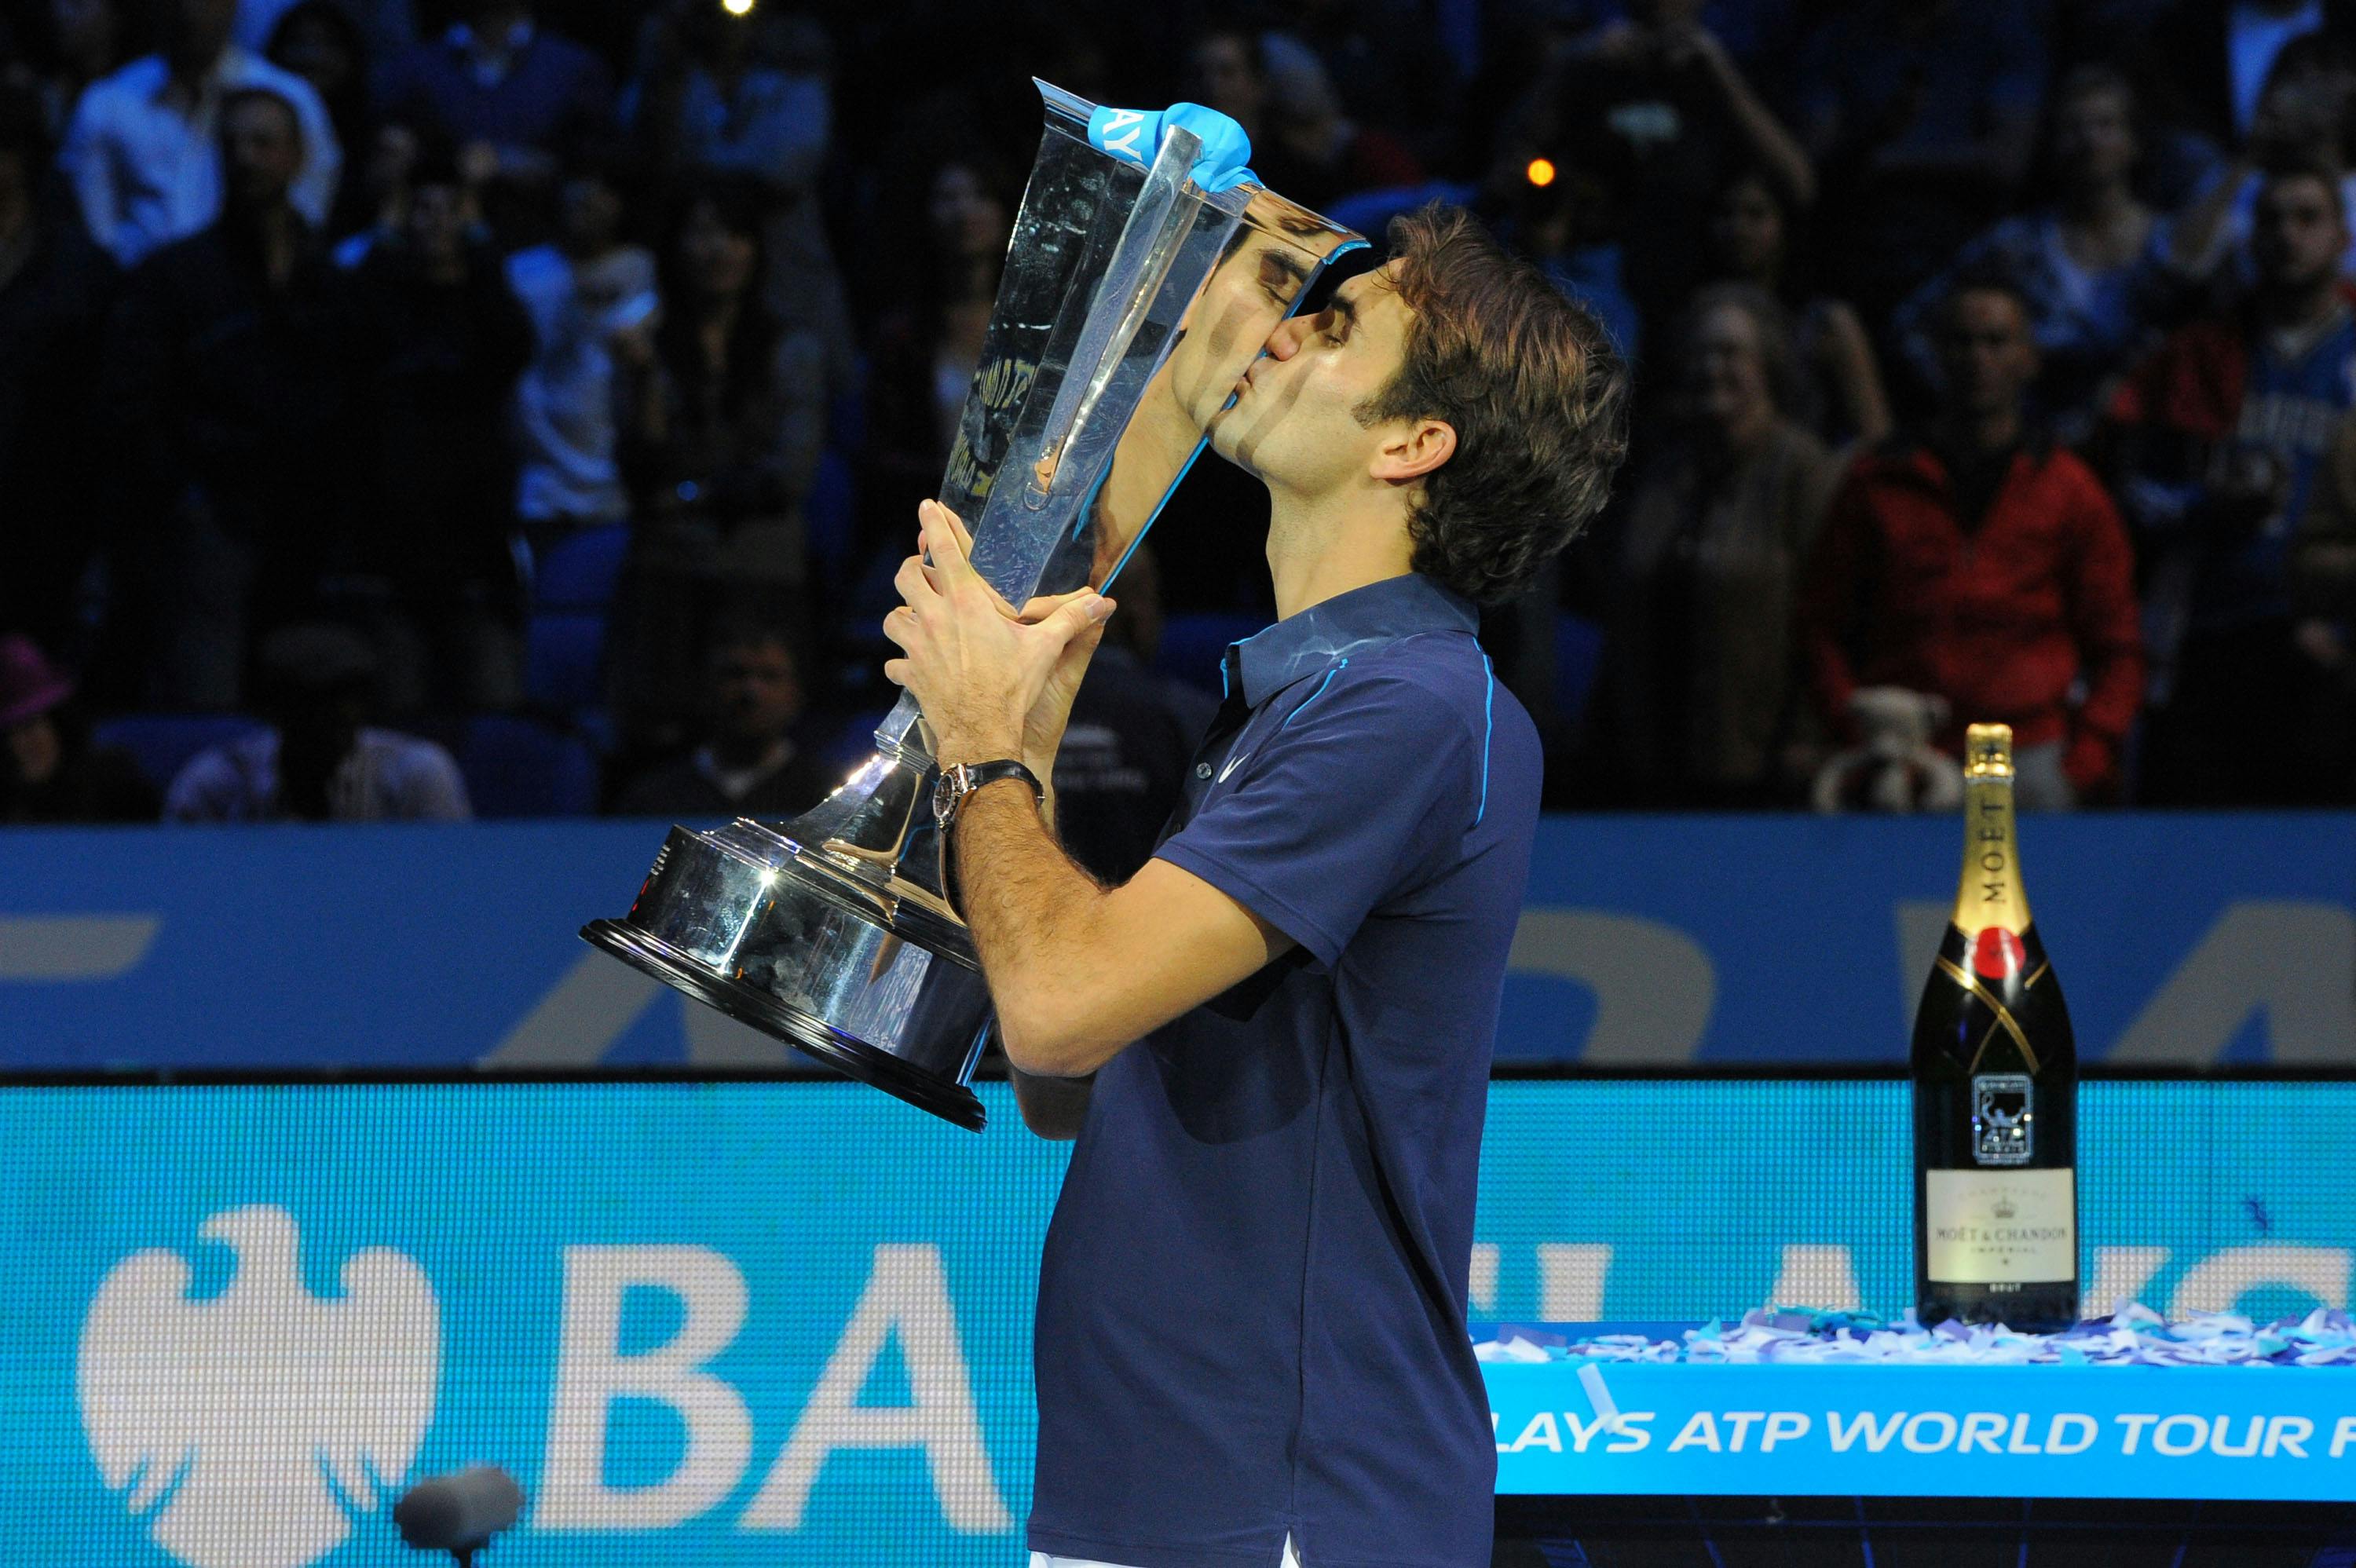 Roger Federer / Masters 2011